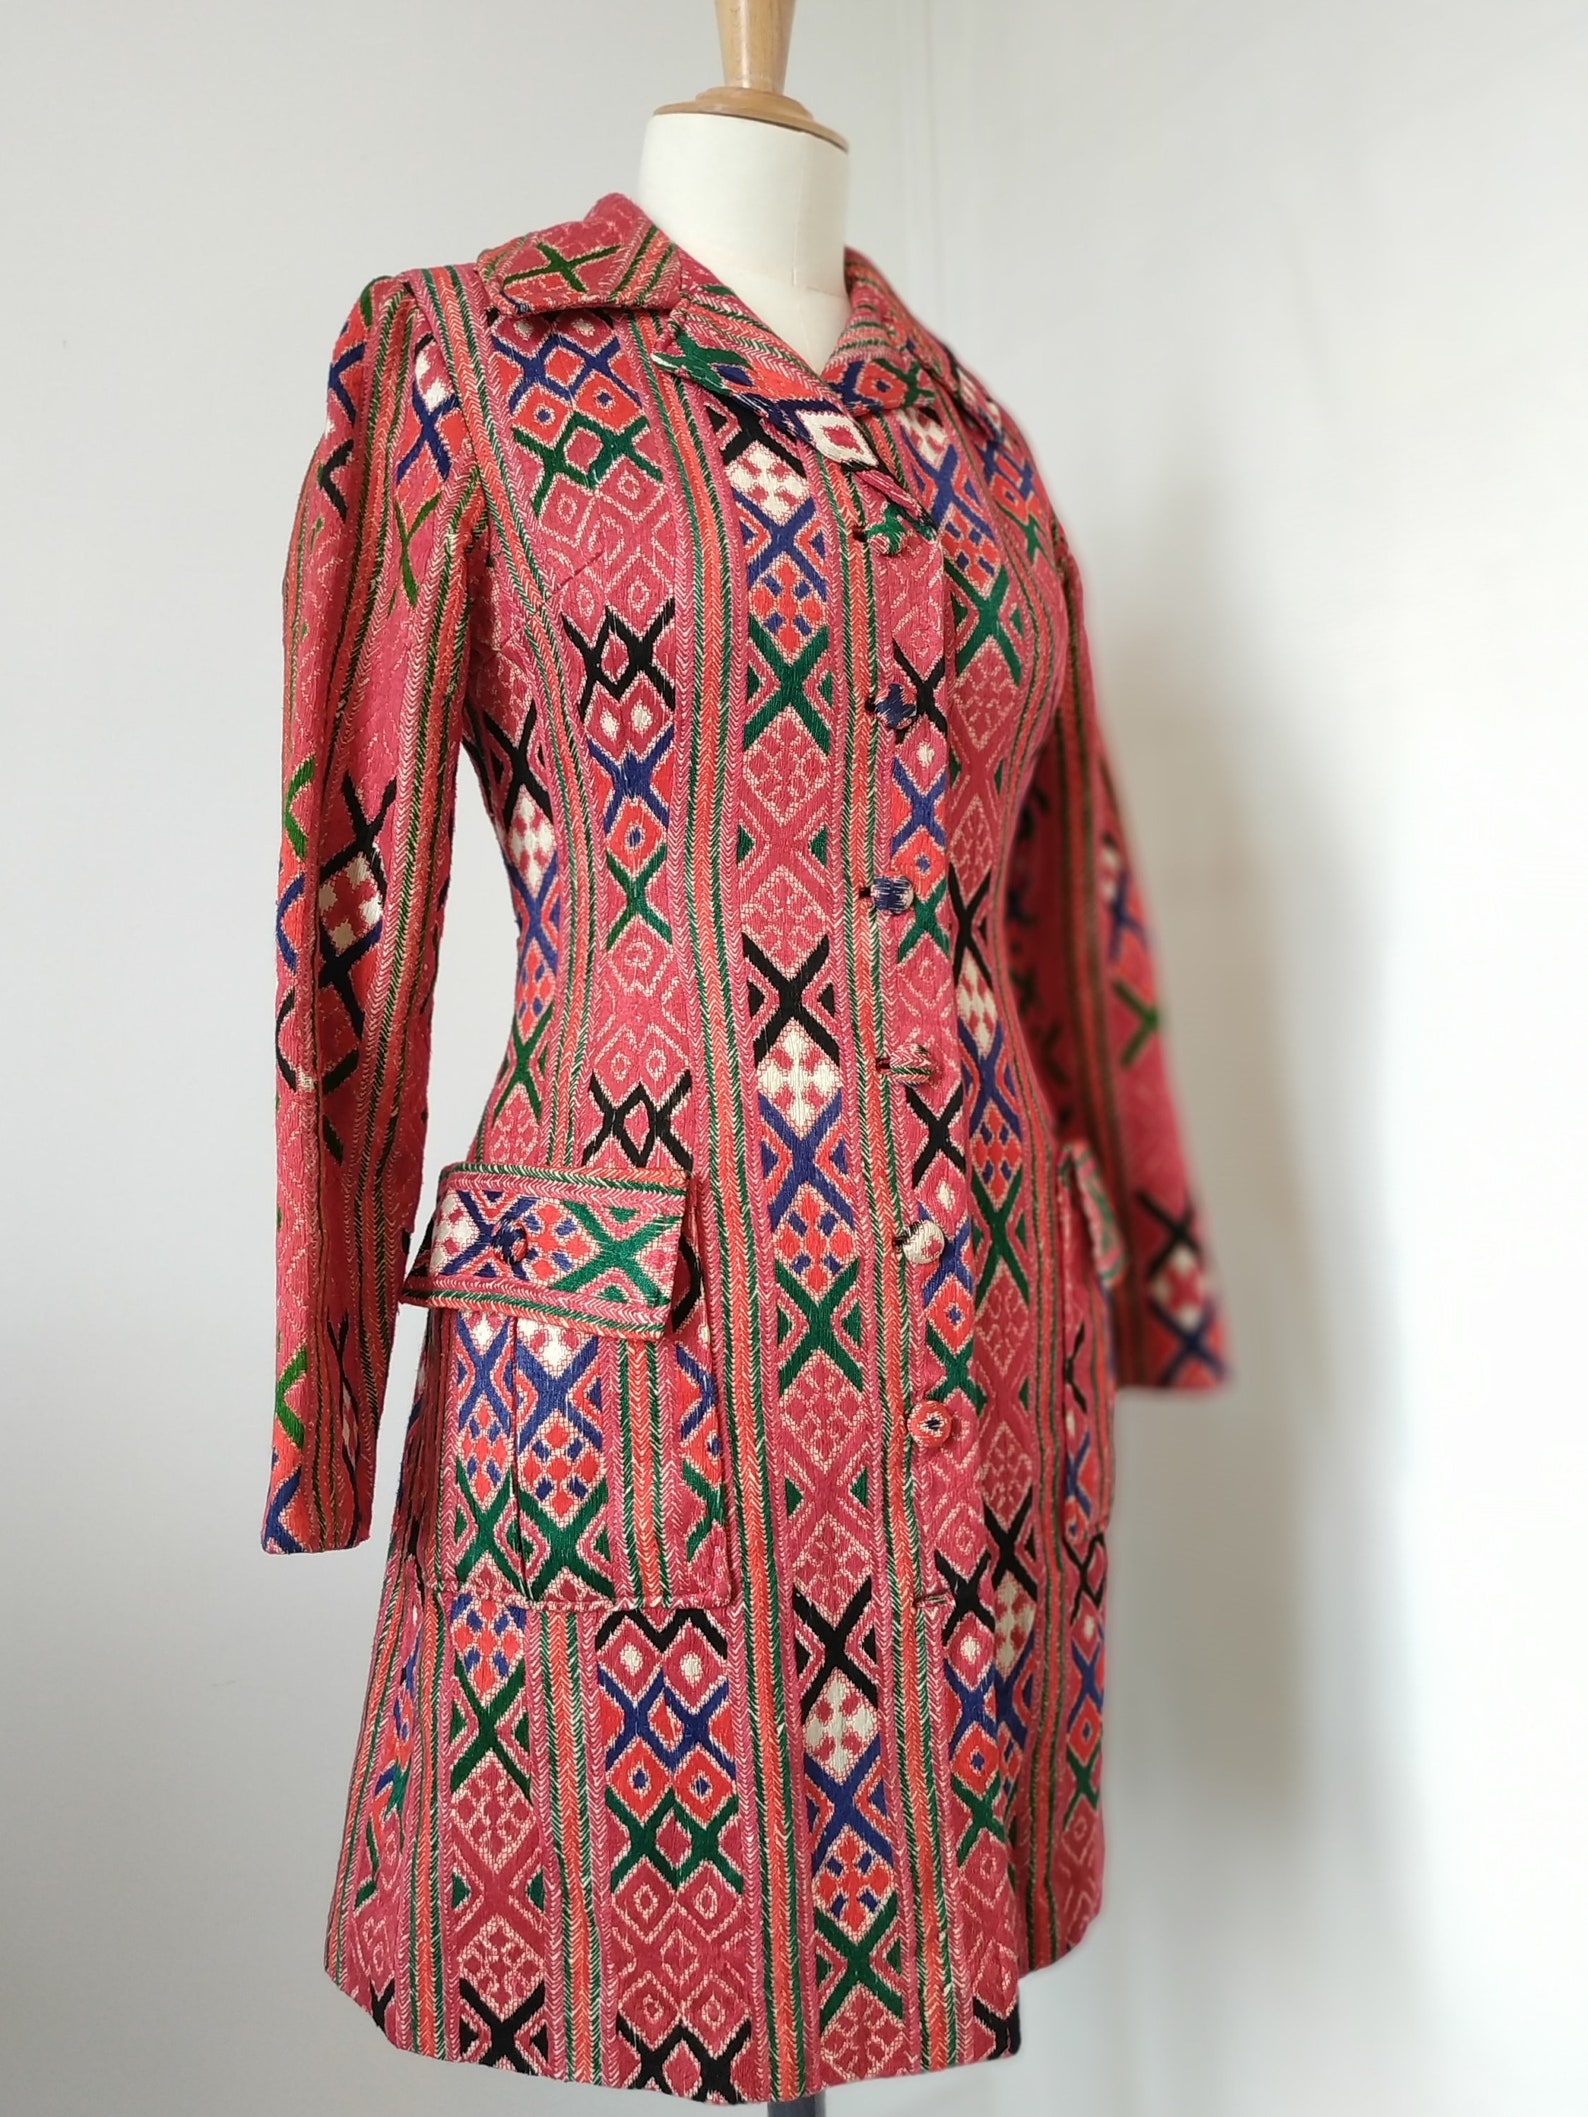 Manteau tapisserie vintage années 60 ethnique brodé main | Etsy